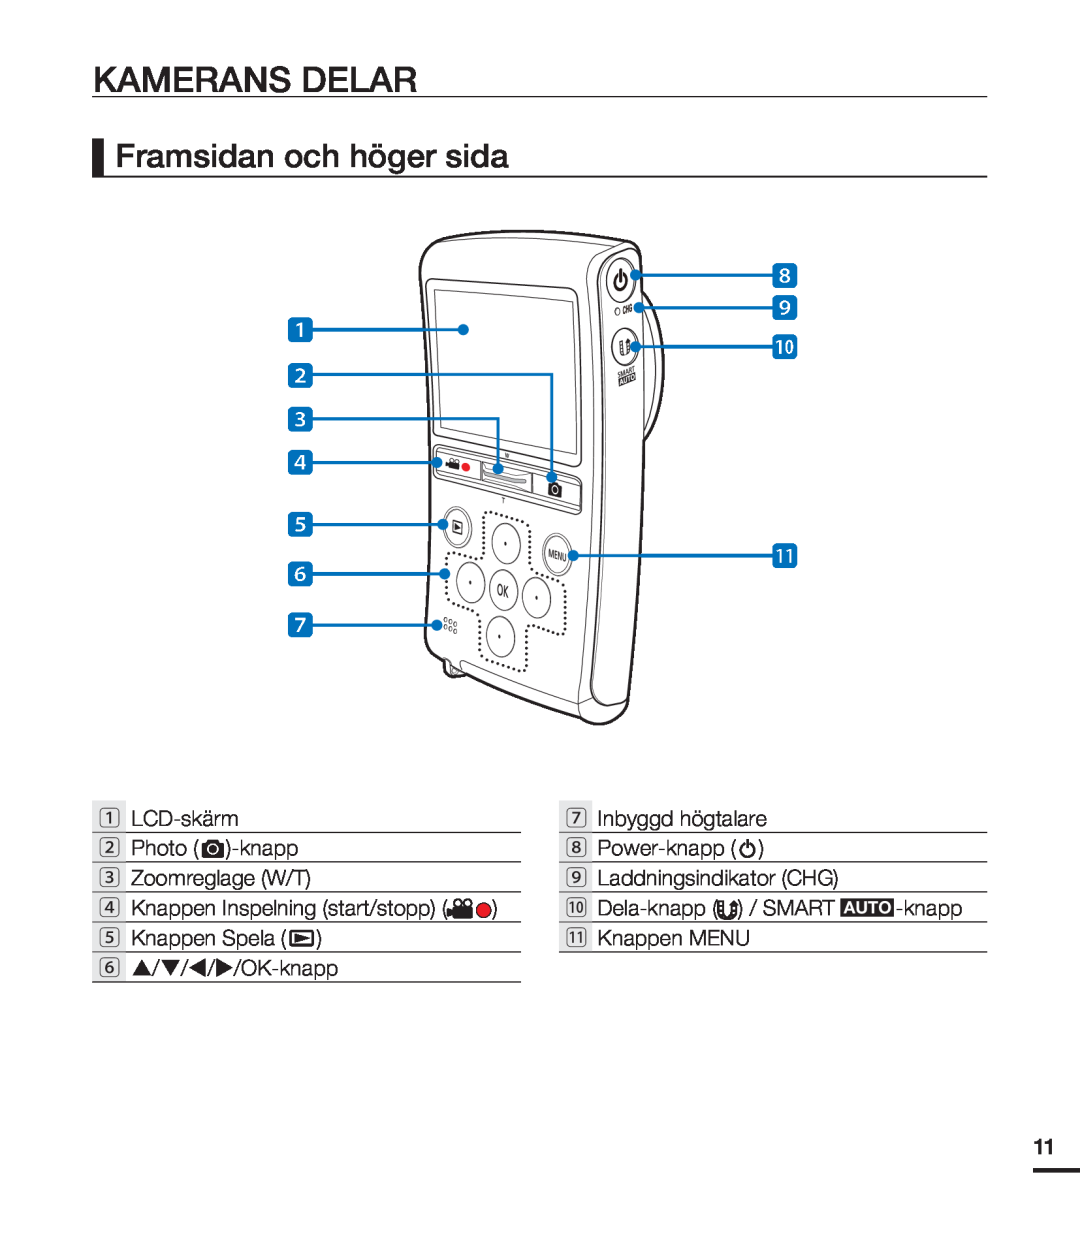 Samsung HMX-U20BP/EDC manual Kamerans Delar, Framsidan och höger sida 